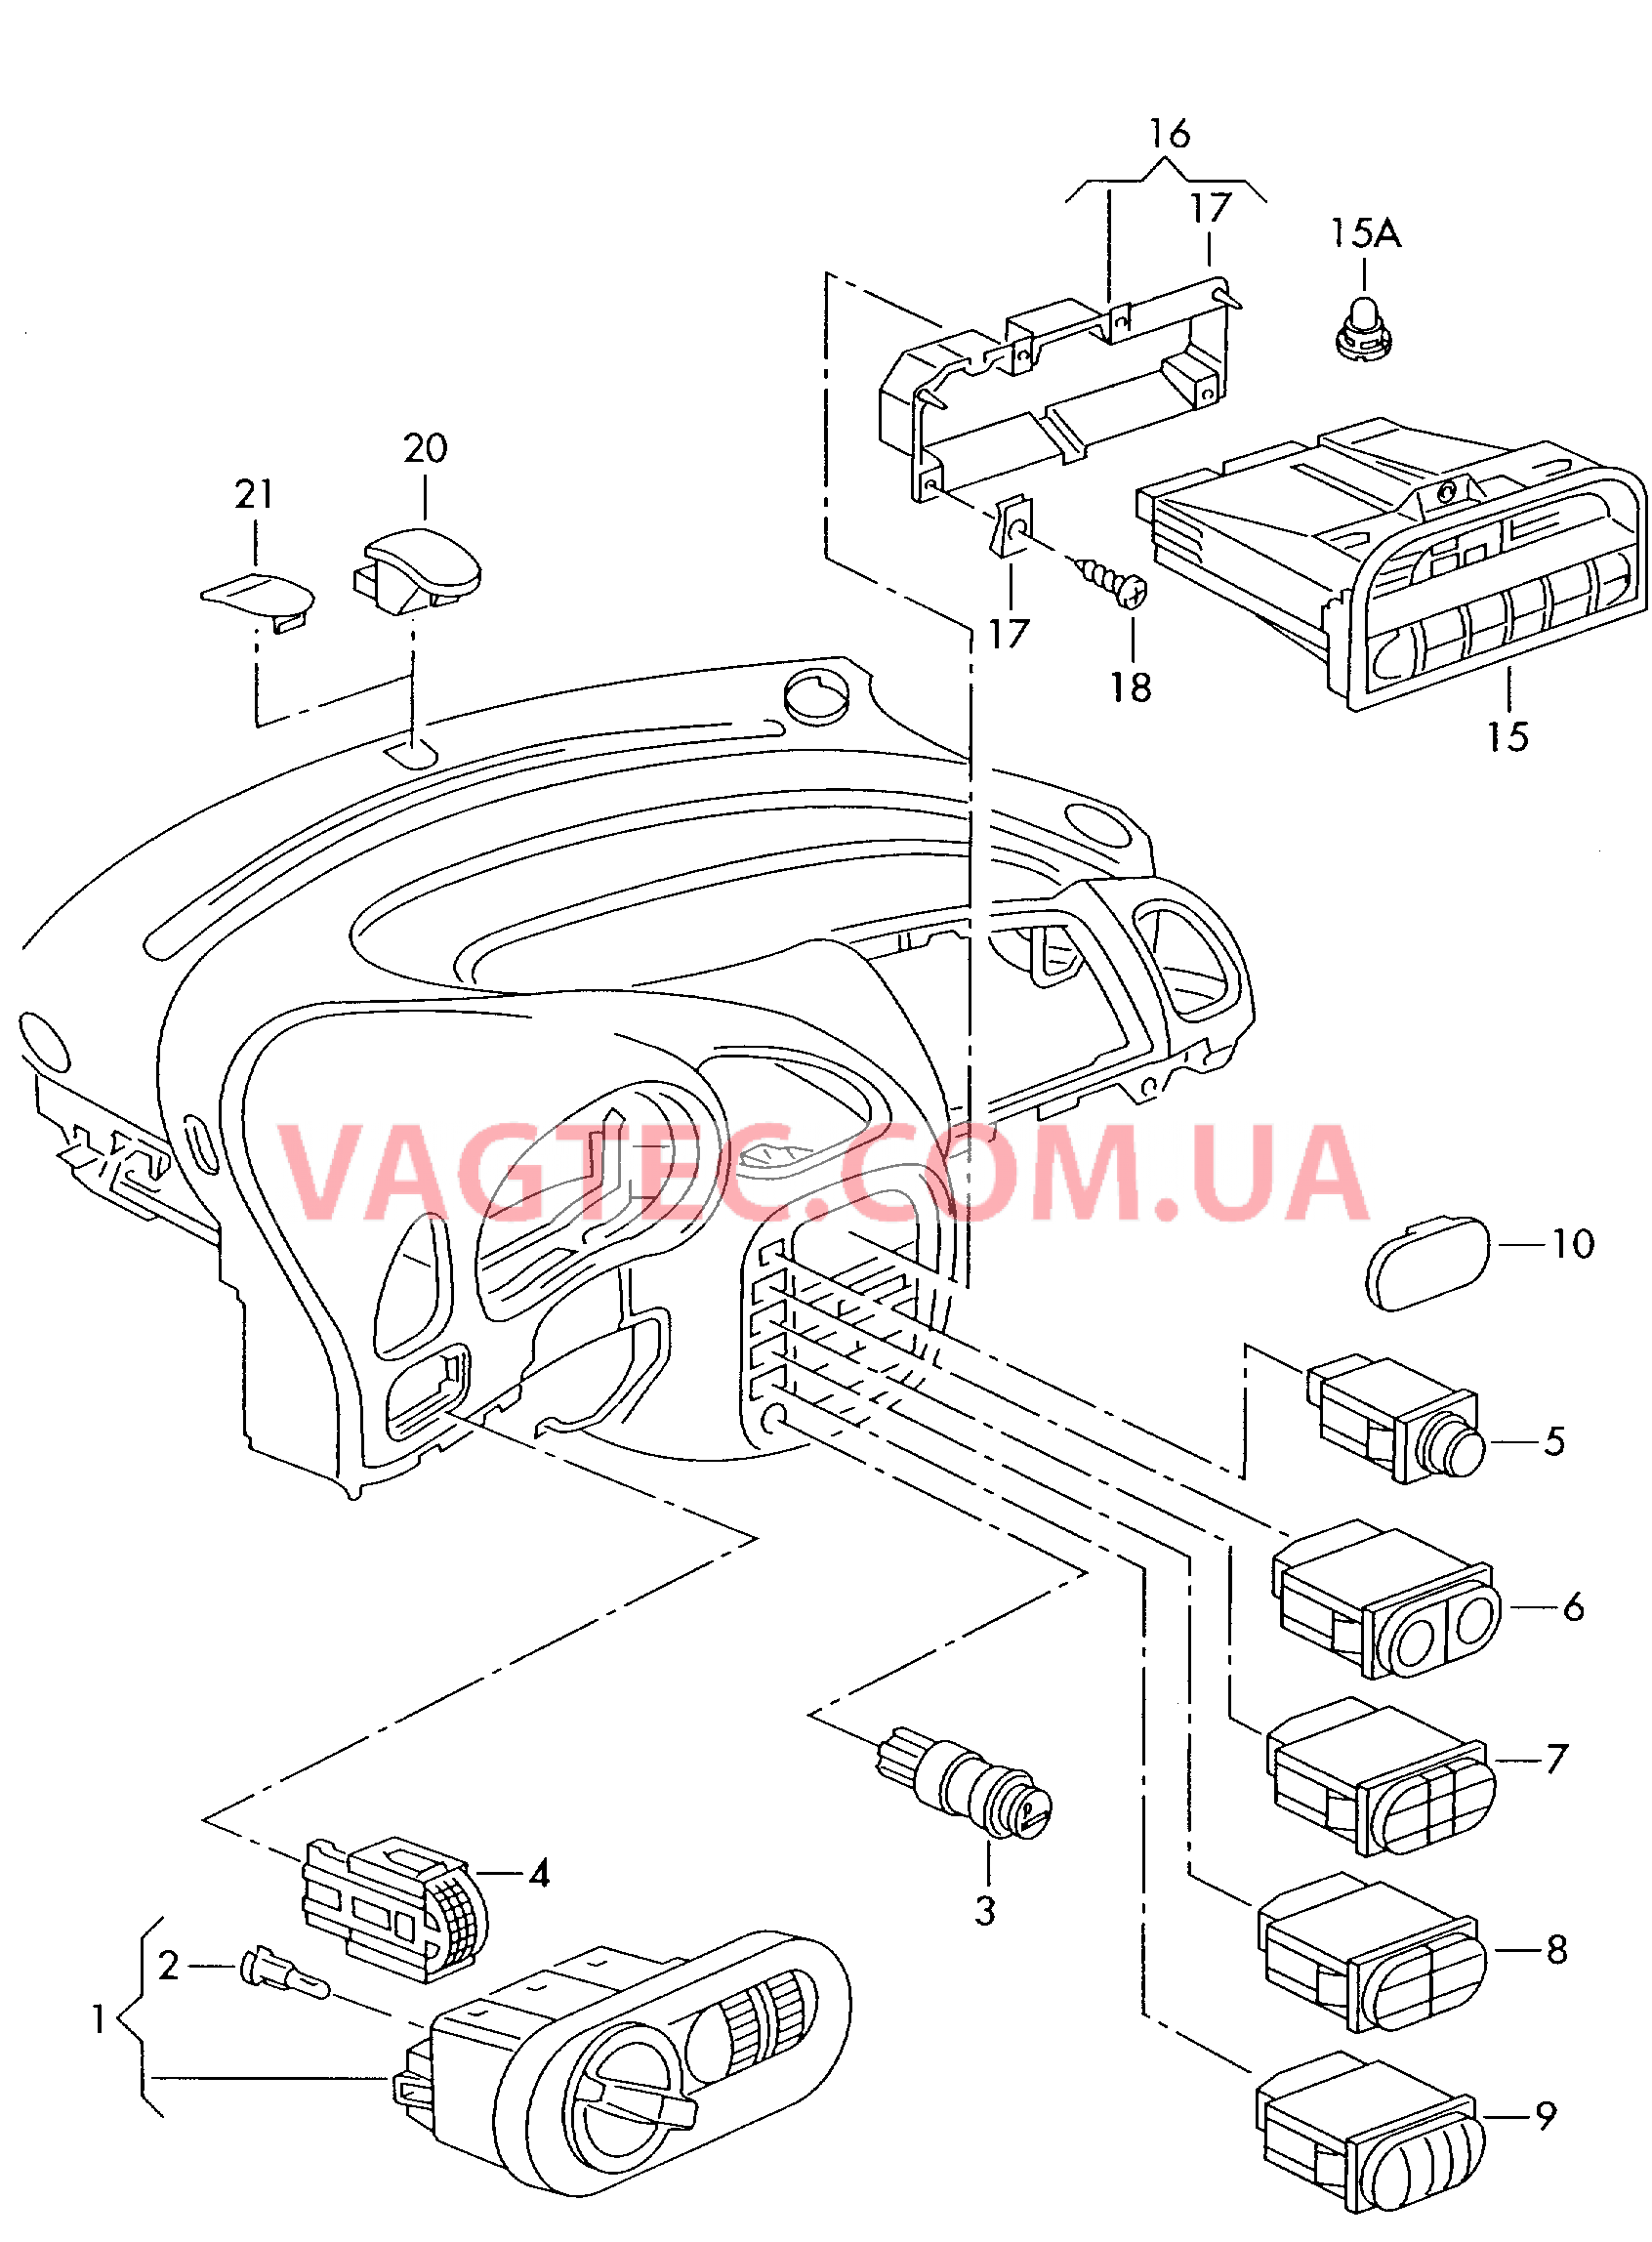 Выключатель в панели приборов БУ климатической установки Датчик интенс. солн. излуч.  для SEAT Alhambra 2000